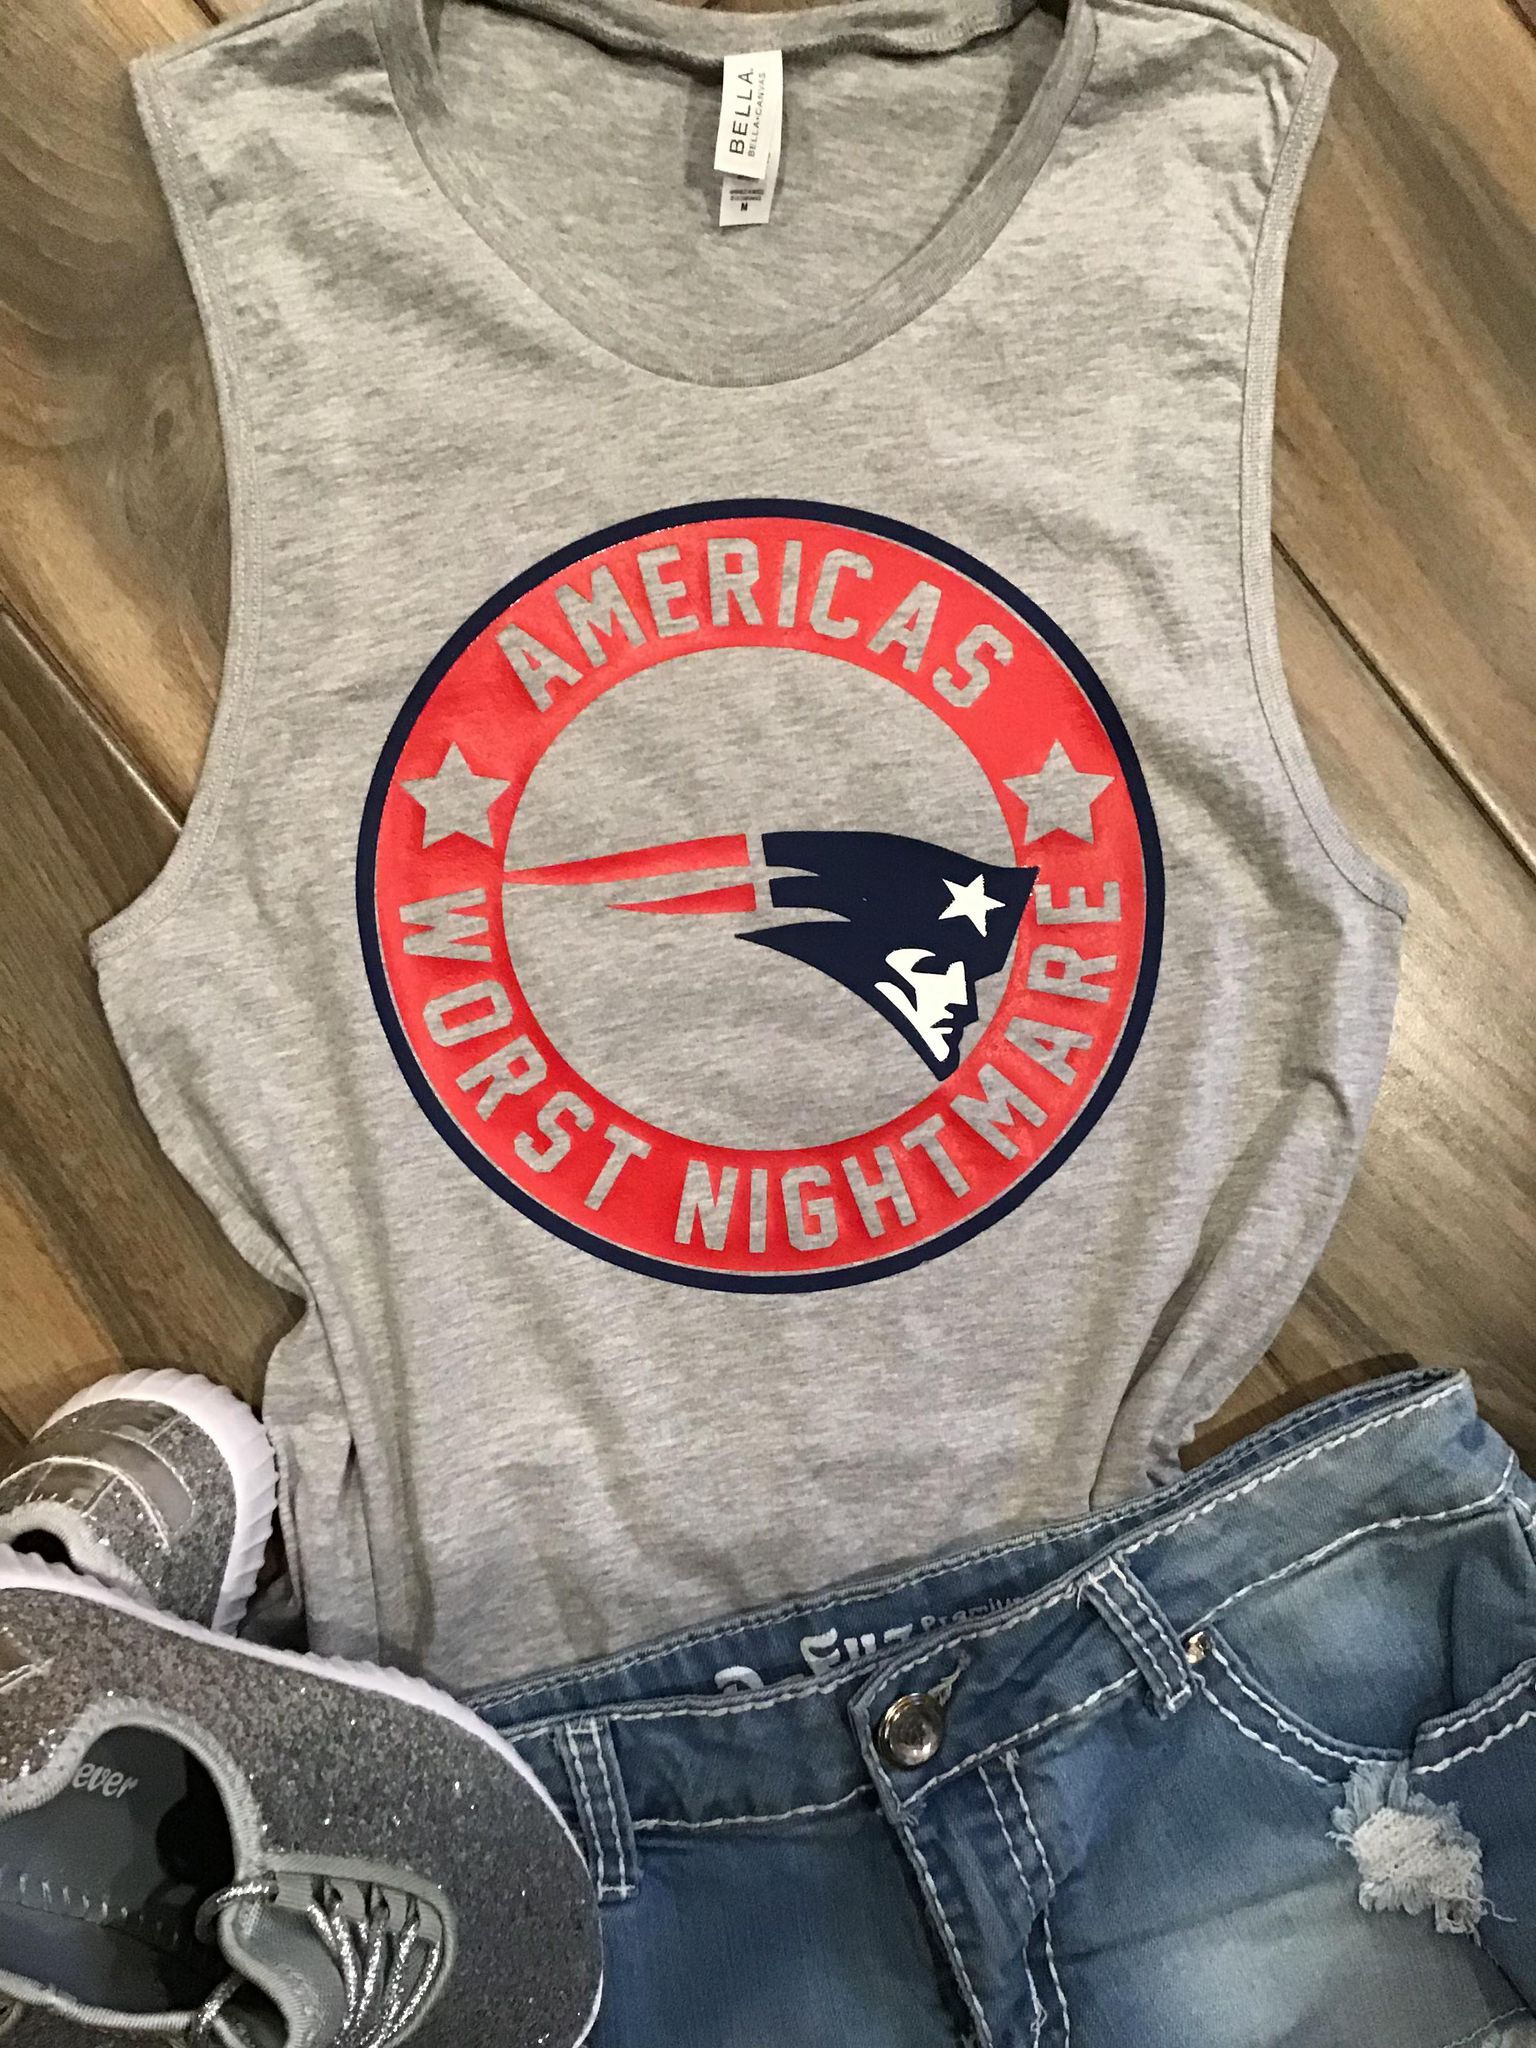 New England Patriots - America's Worst Nightmare Shirt